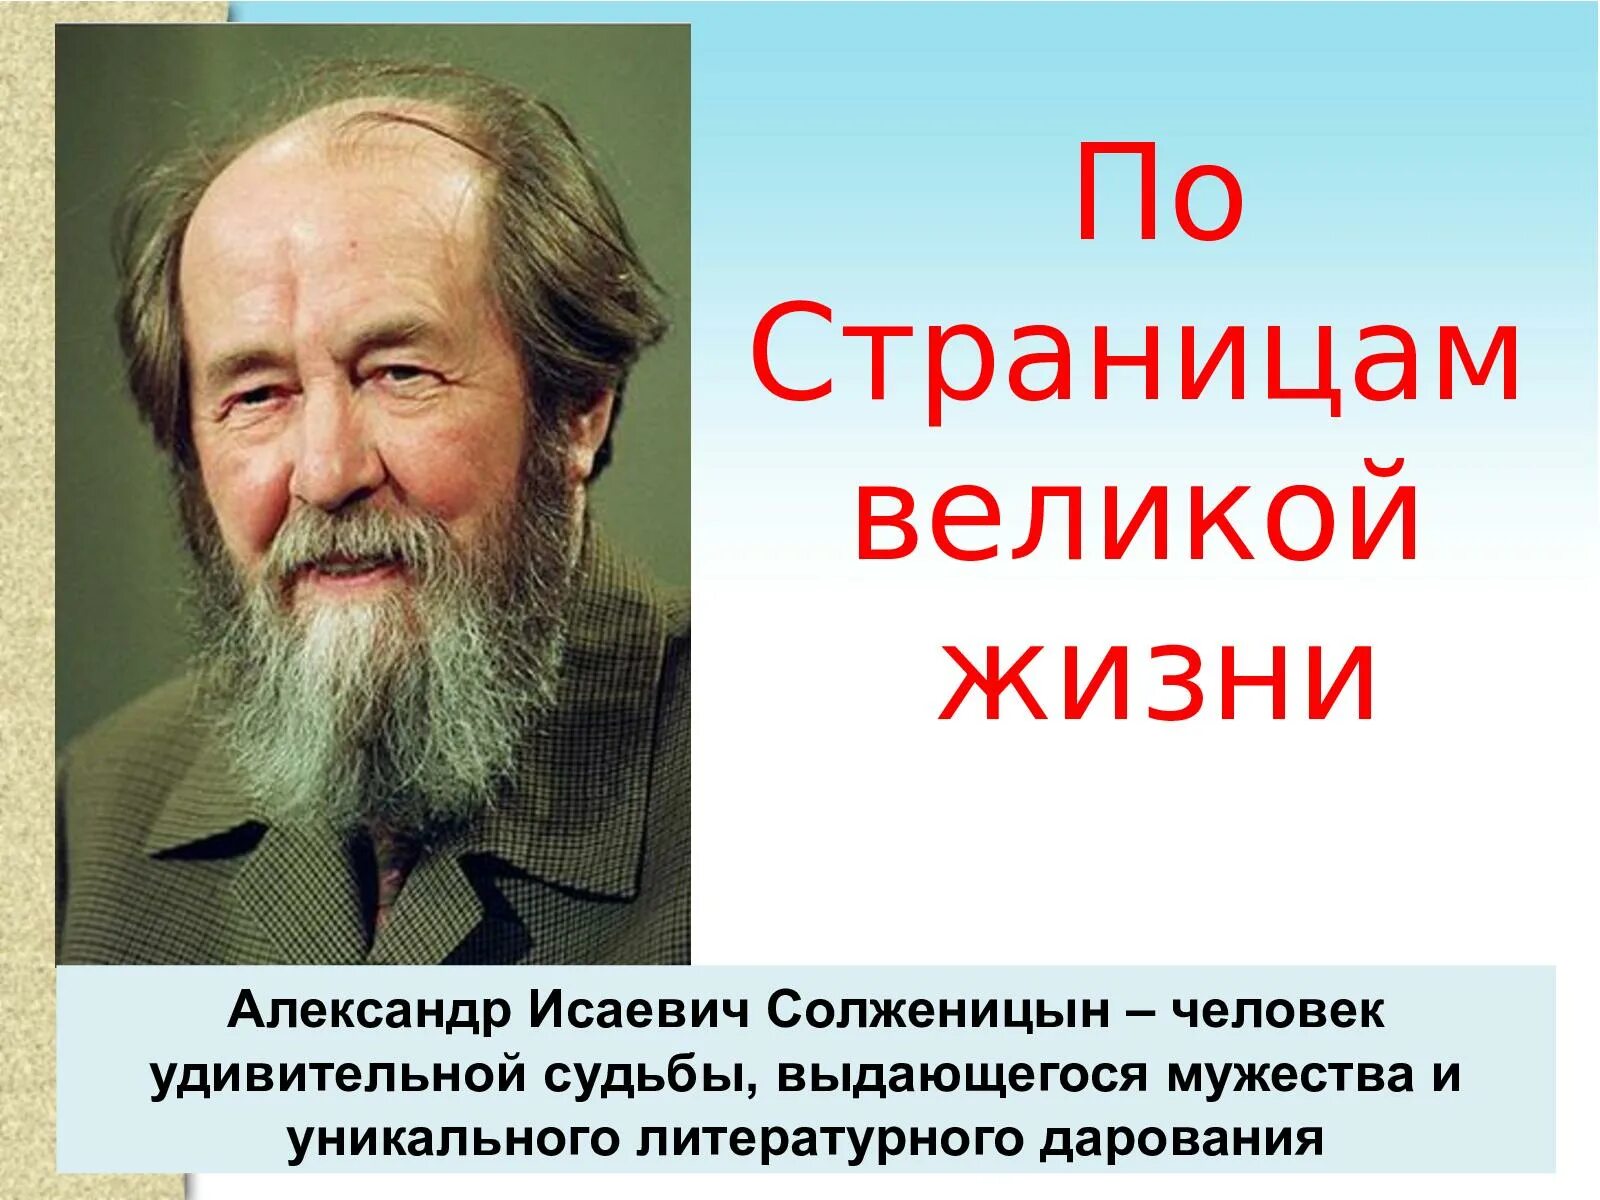 А и солженицын судьба и творчество писателя. Цитаты Солженицына.